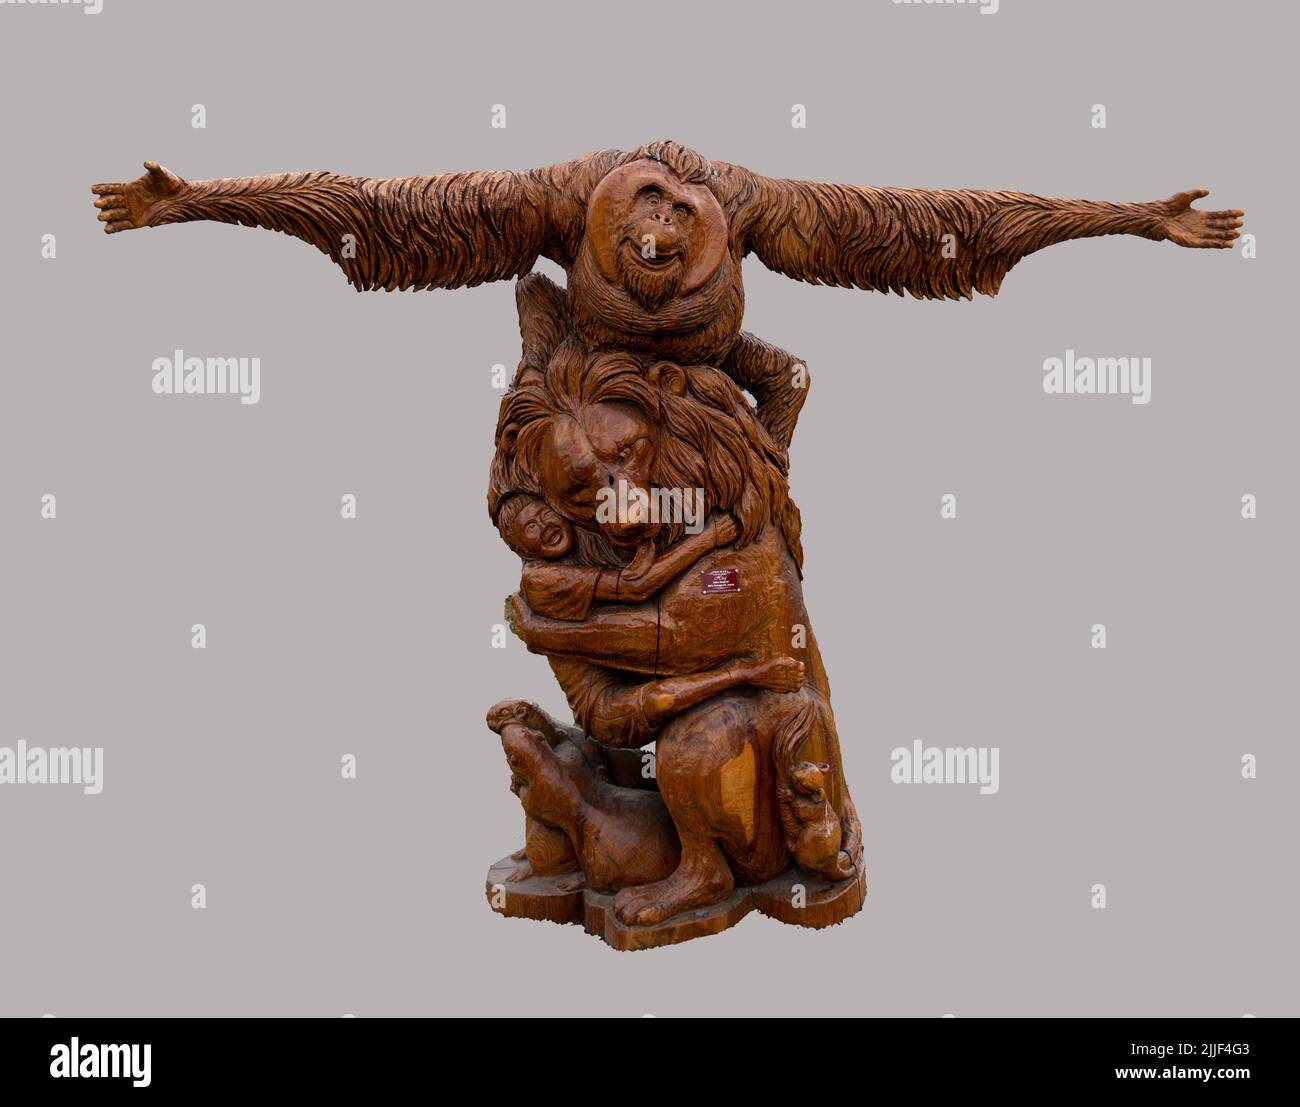 Ce complexe de sculpture est l'une des nombreuses sculptures en bois de Chainsaw du Championnat international de sculpture de Chetwynd à Chetwynd, en Colombie-Britannique Banque D'Images